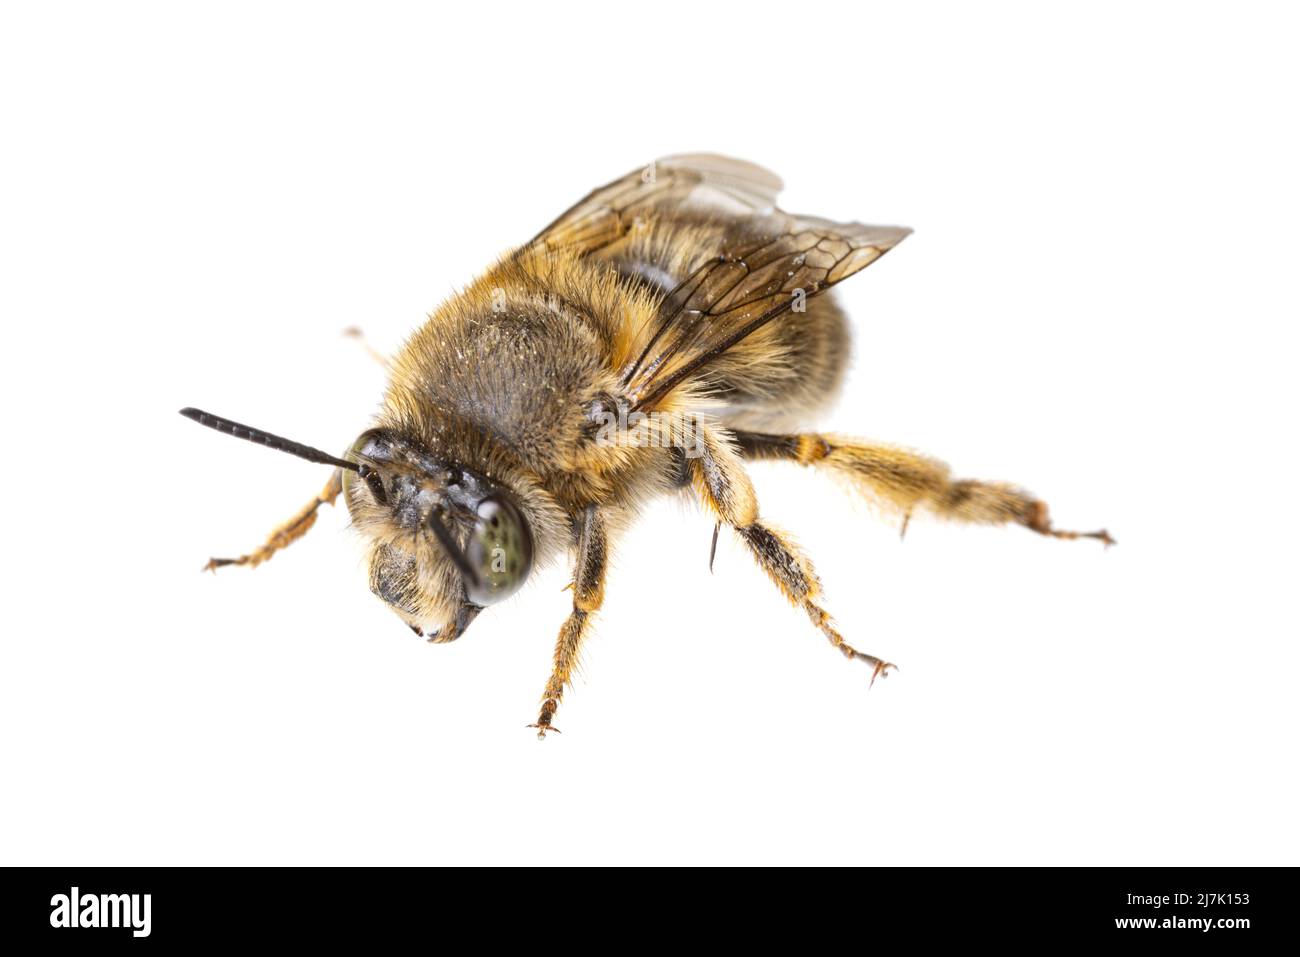 Insectes d'europe - abeilles: Macro de femelles Anthophora crinipes (Pelzbienen) isolé sur fond blanc - vue de dessus Banque D'Images